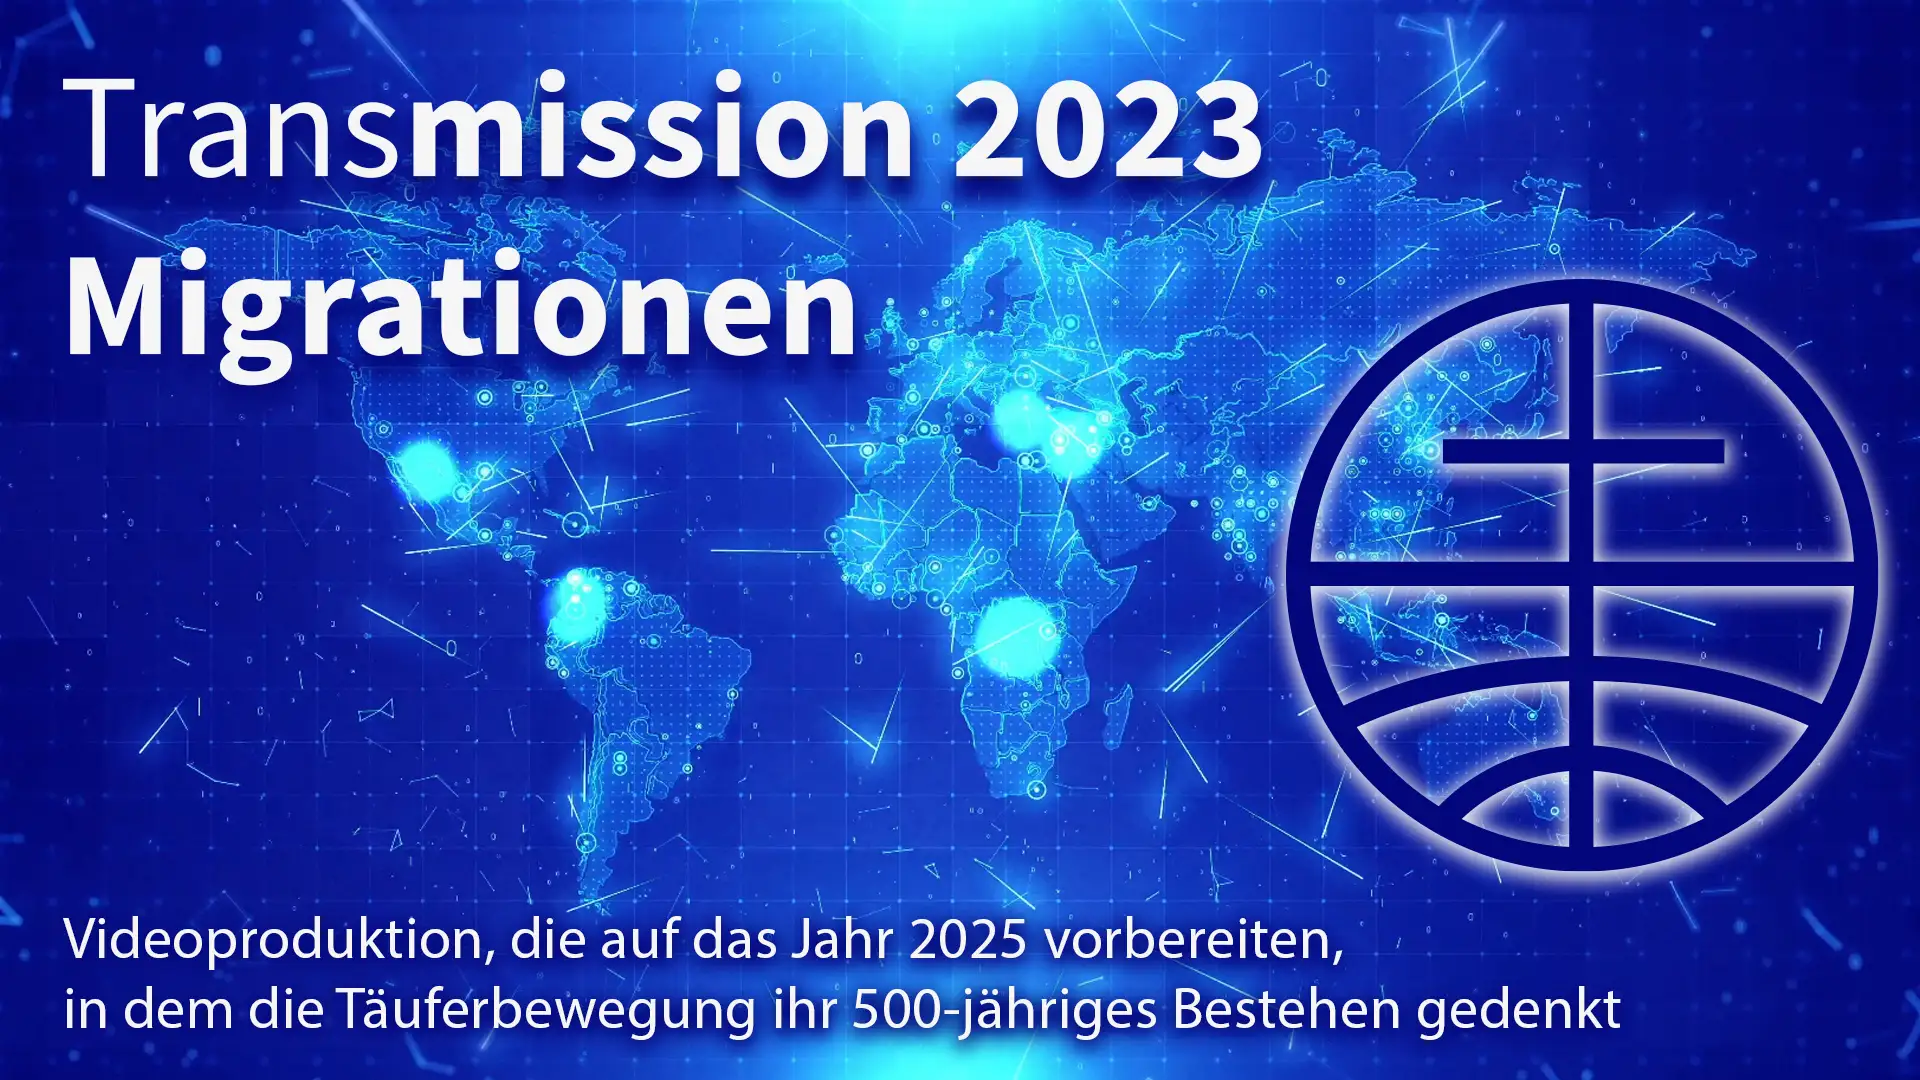 Transmission 2023 Migration